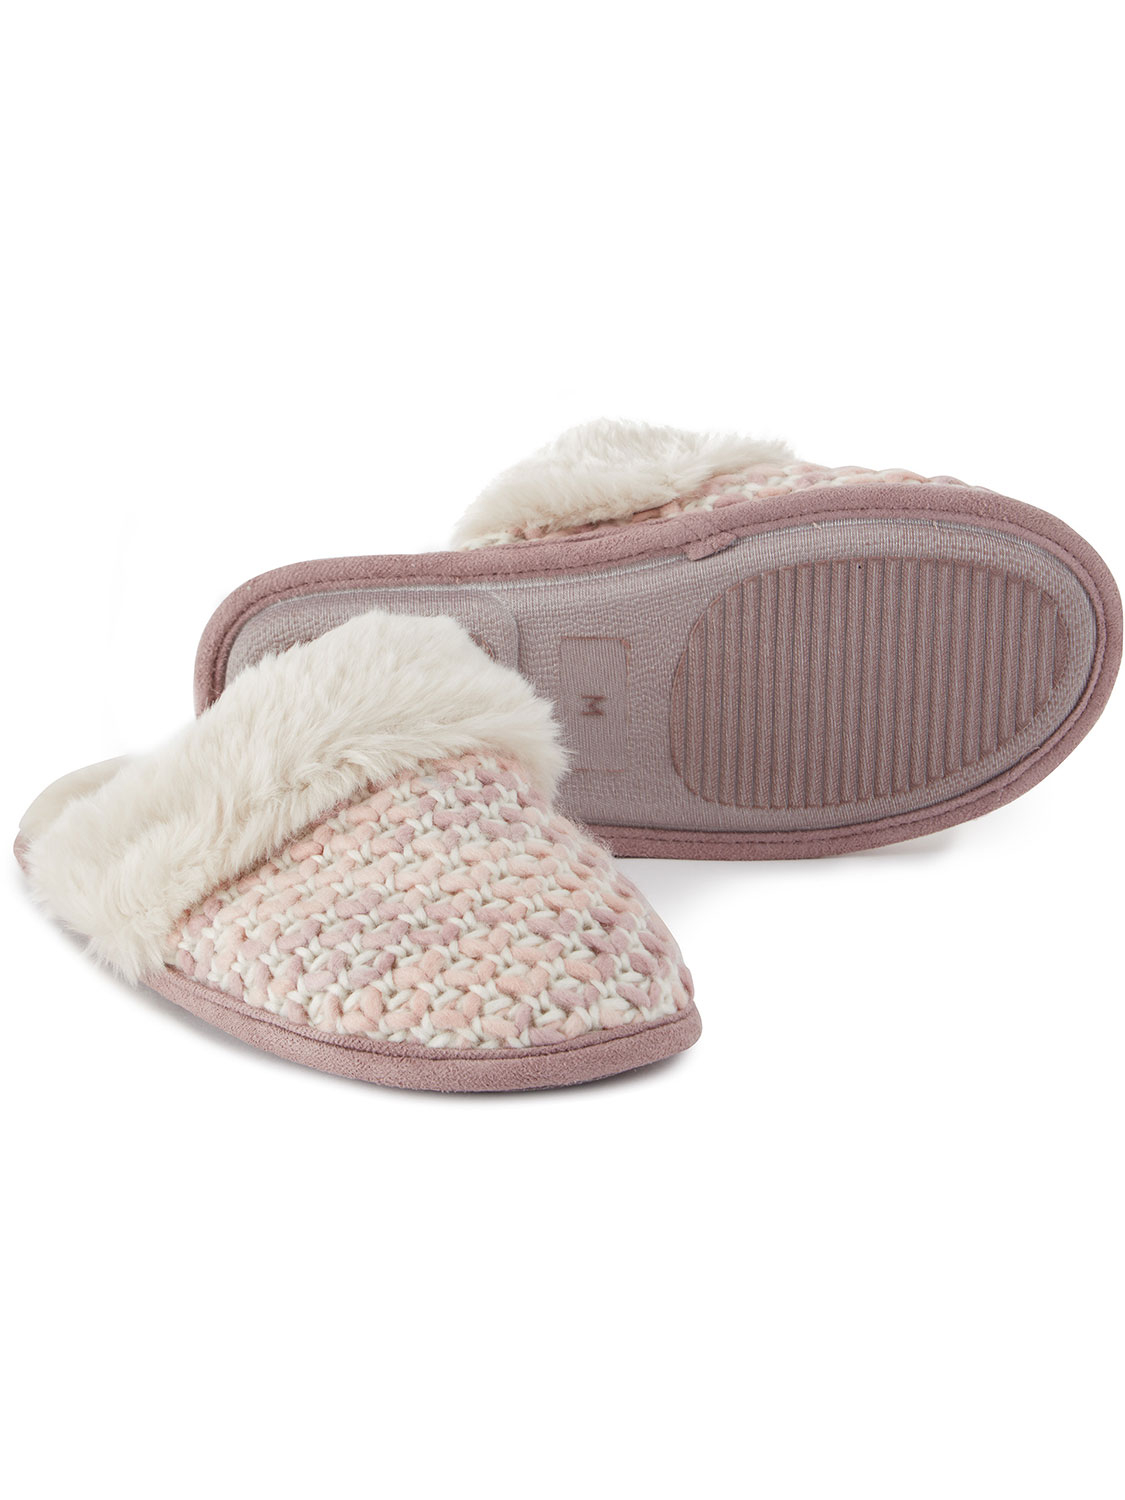 Tunnard Knit Slipper - Size: 10 Pink Tog24